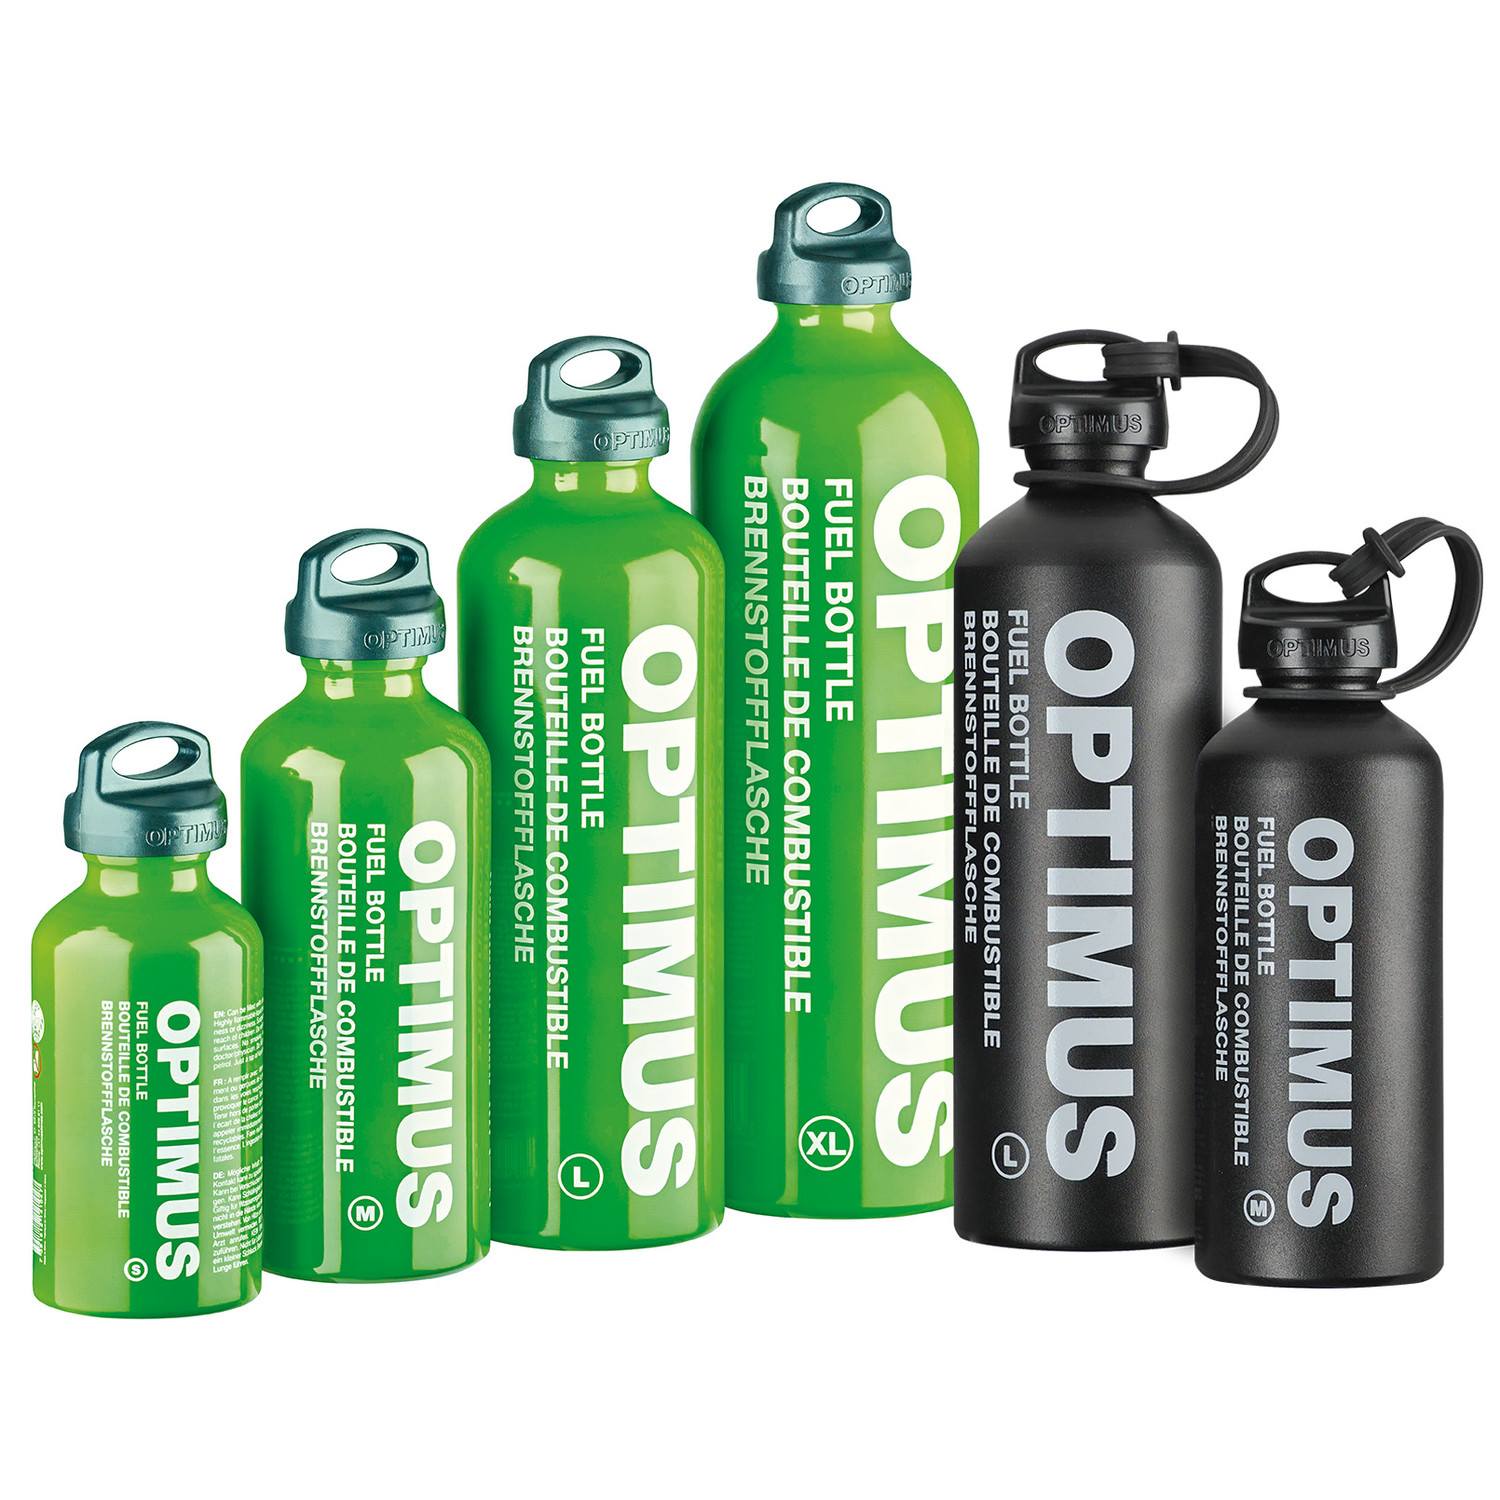 Optimus Brennstoffflasche 0,4 bis 1,5 Liter in Grün oder Schwarz (Fuel Bottle für Benzin etc.)